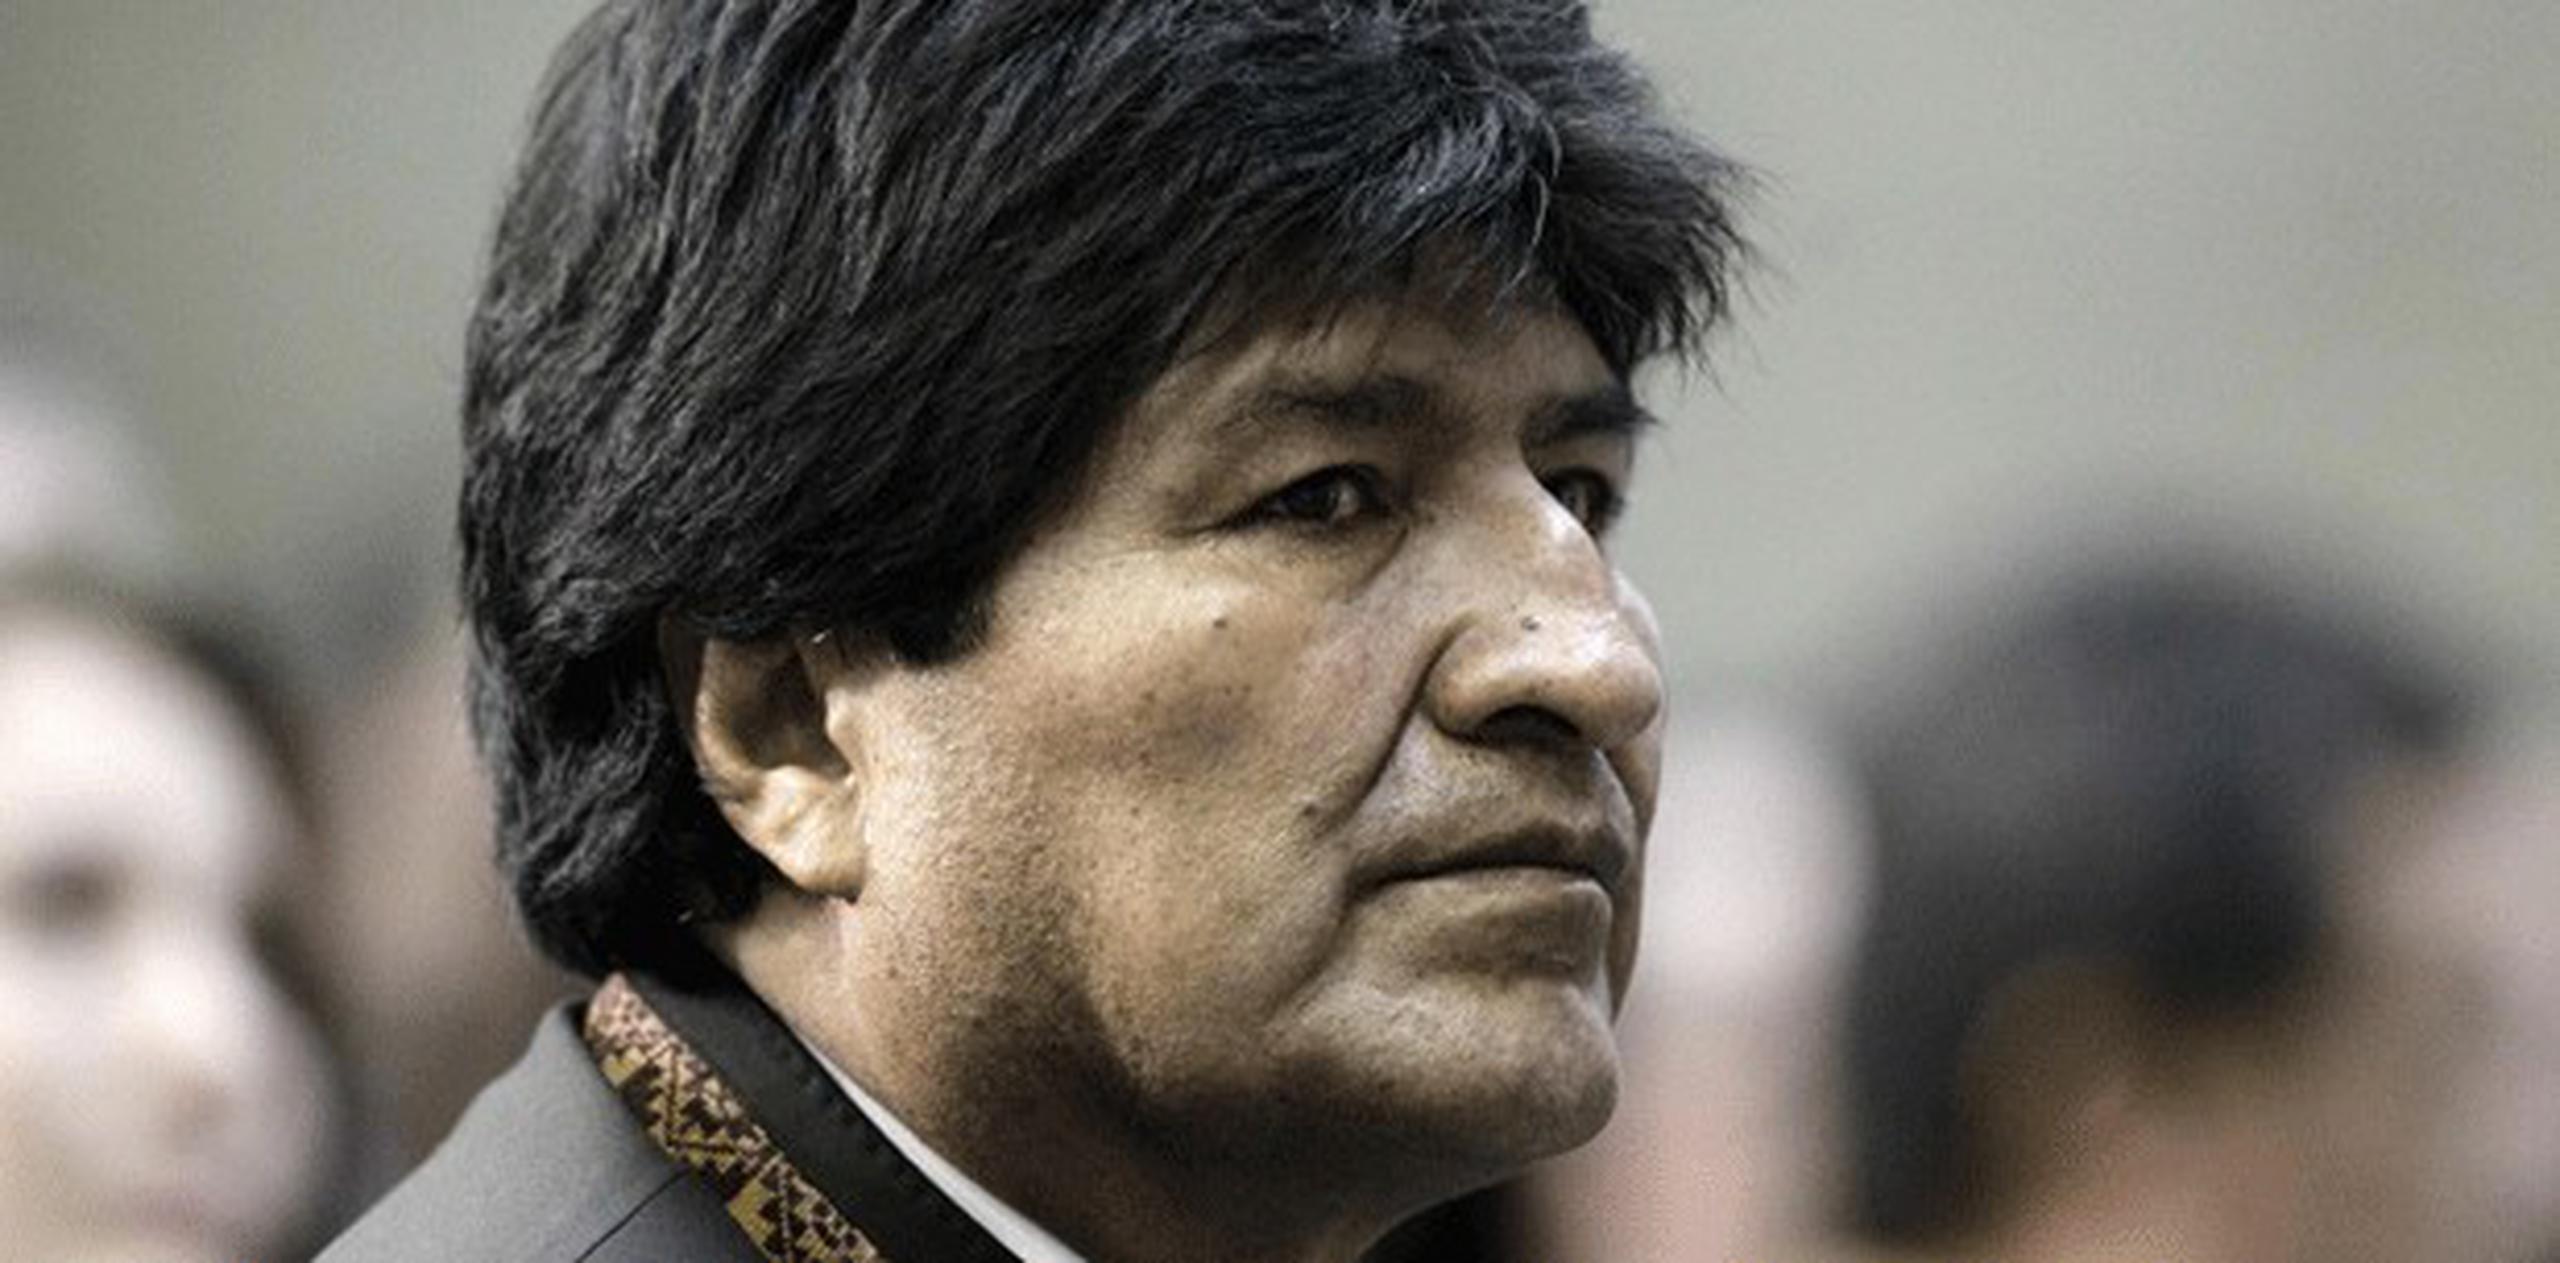 El hombre dijo ser familiar del presidente de Bolivia, Evo Morales (en la foto), para obtener un trato preferencial en un problema de aduanas, informó hoy la Fiscalía General del Estado. (Archivo)